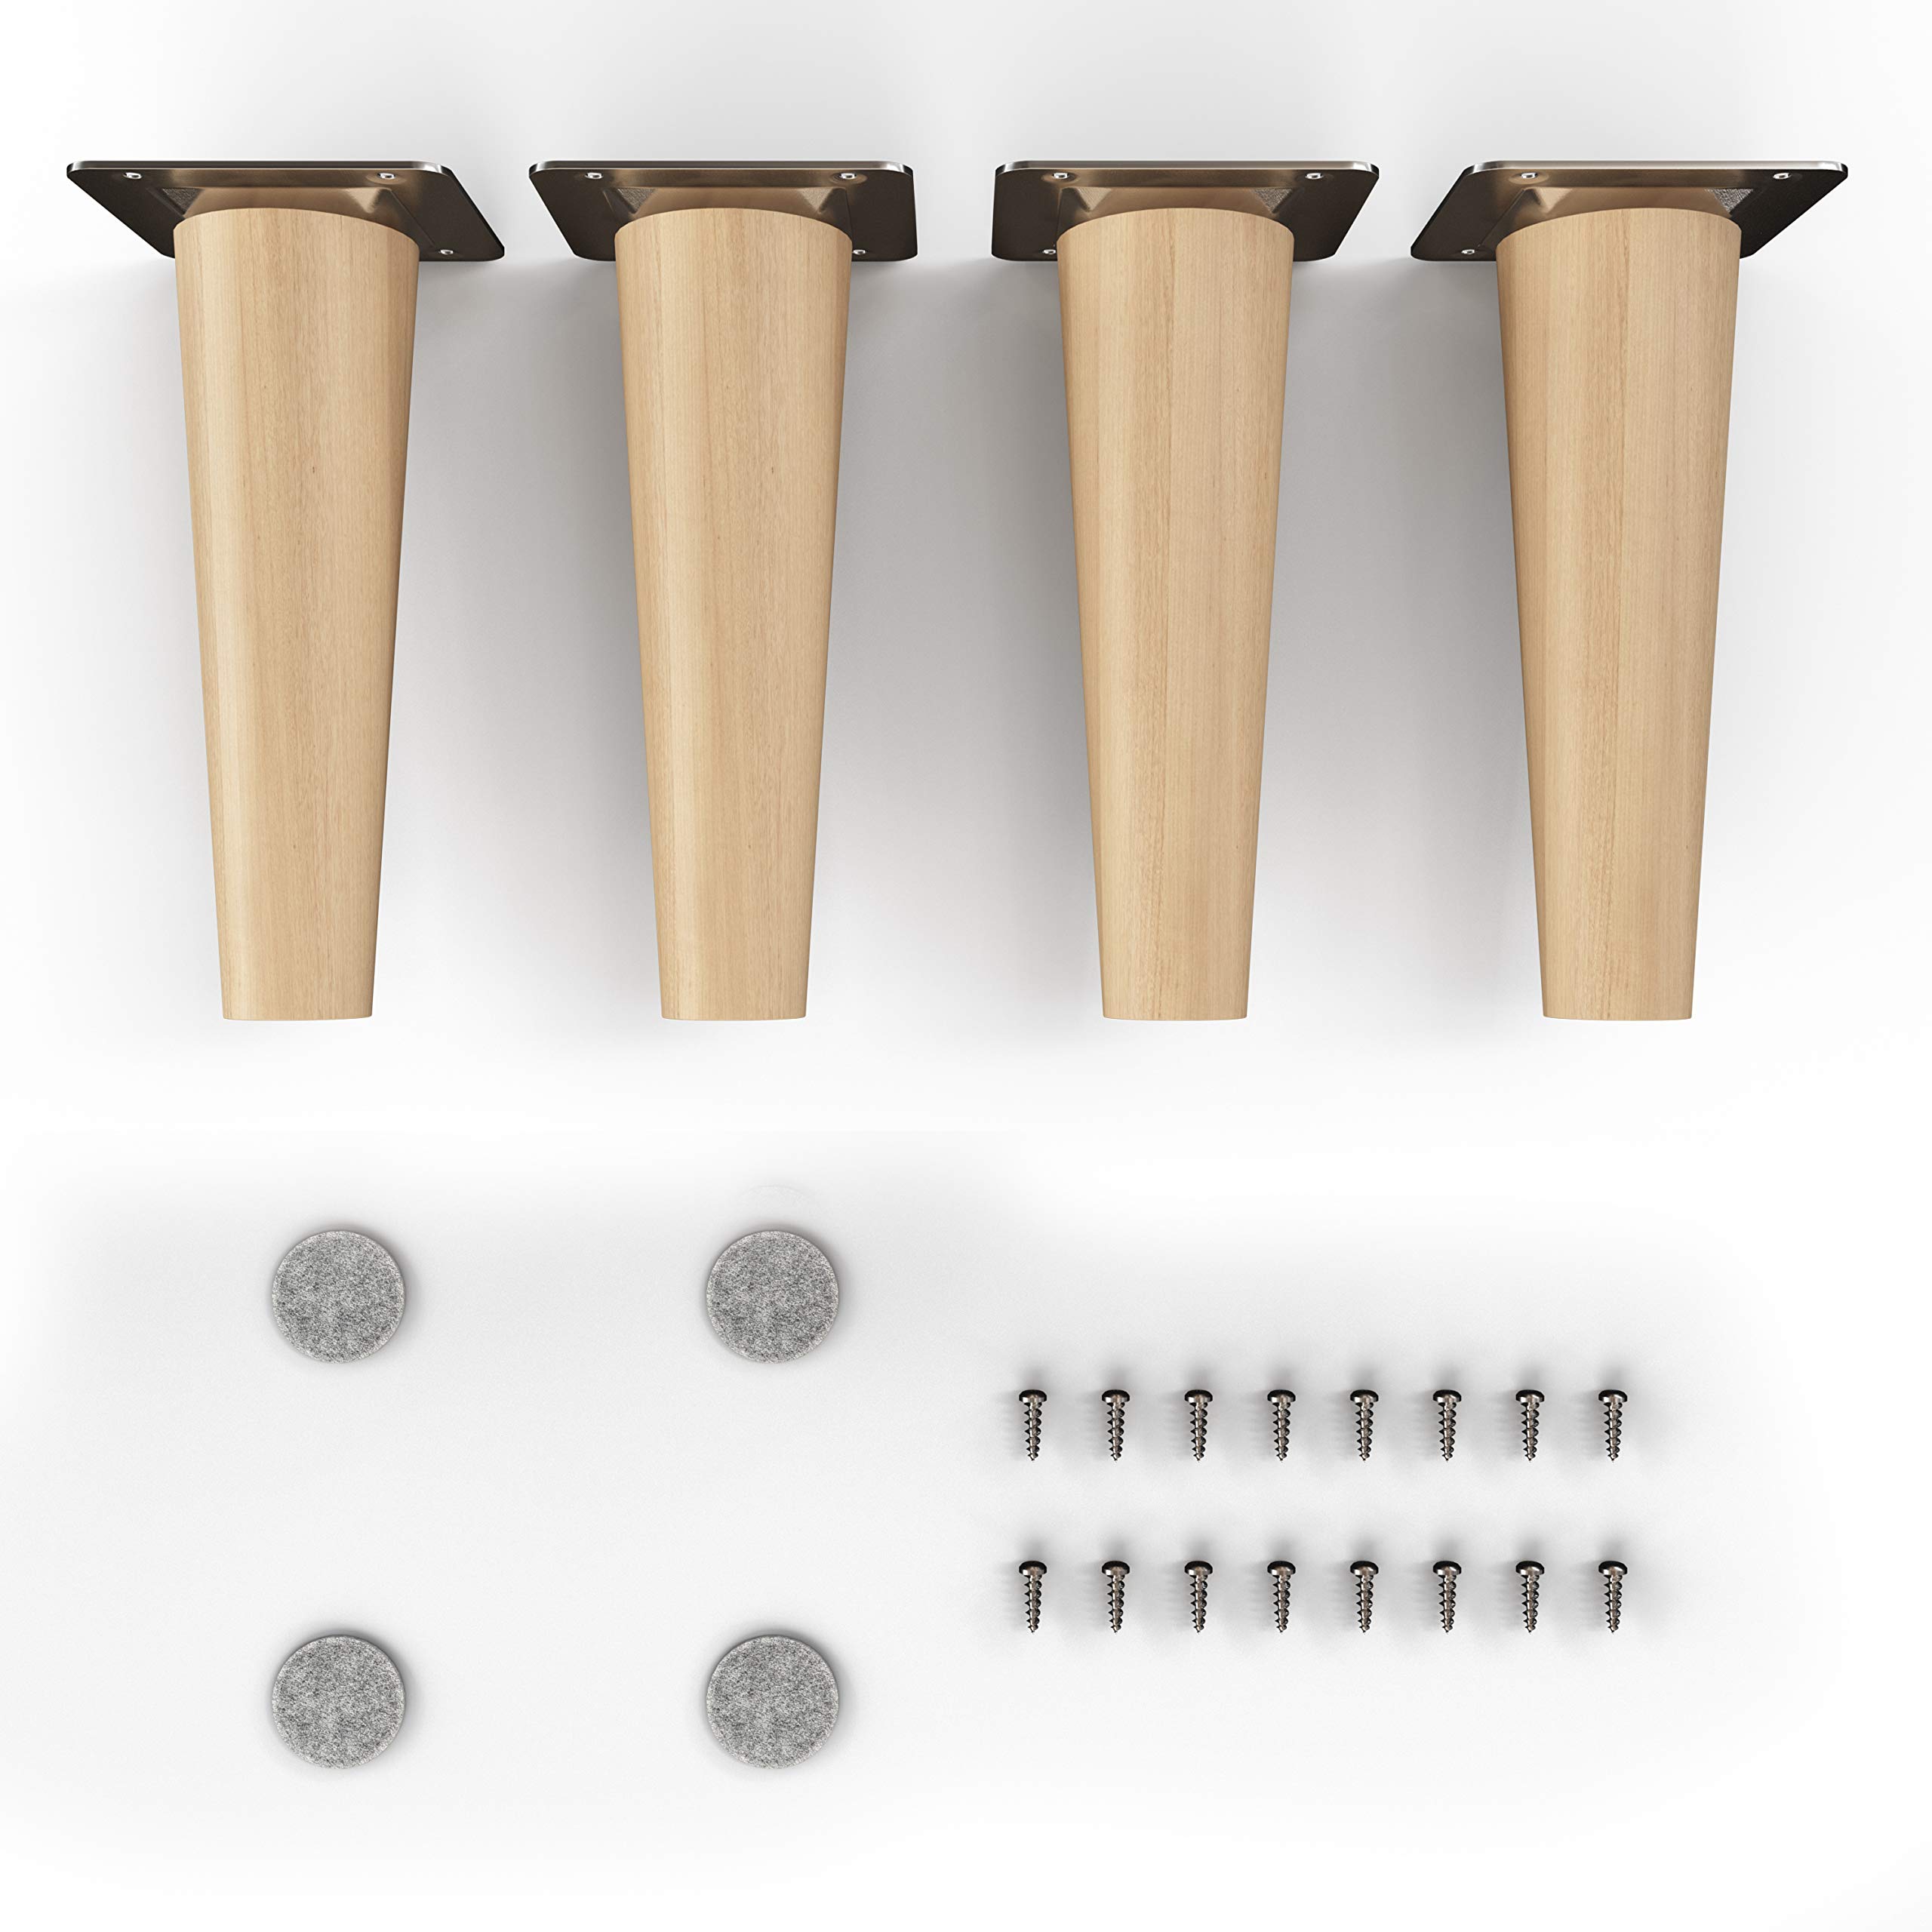 sossai® Holz-Möbelfüße - Clif Round | Öl-Finish | Höhe: 15 cm | HMF1 | rund, konisch (gerade Ausführung) |Material: Massivholz (Buche) | für Stühle, Tische, Schränke etc.